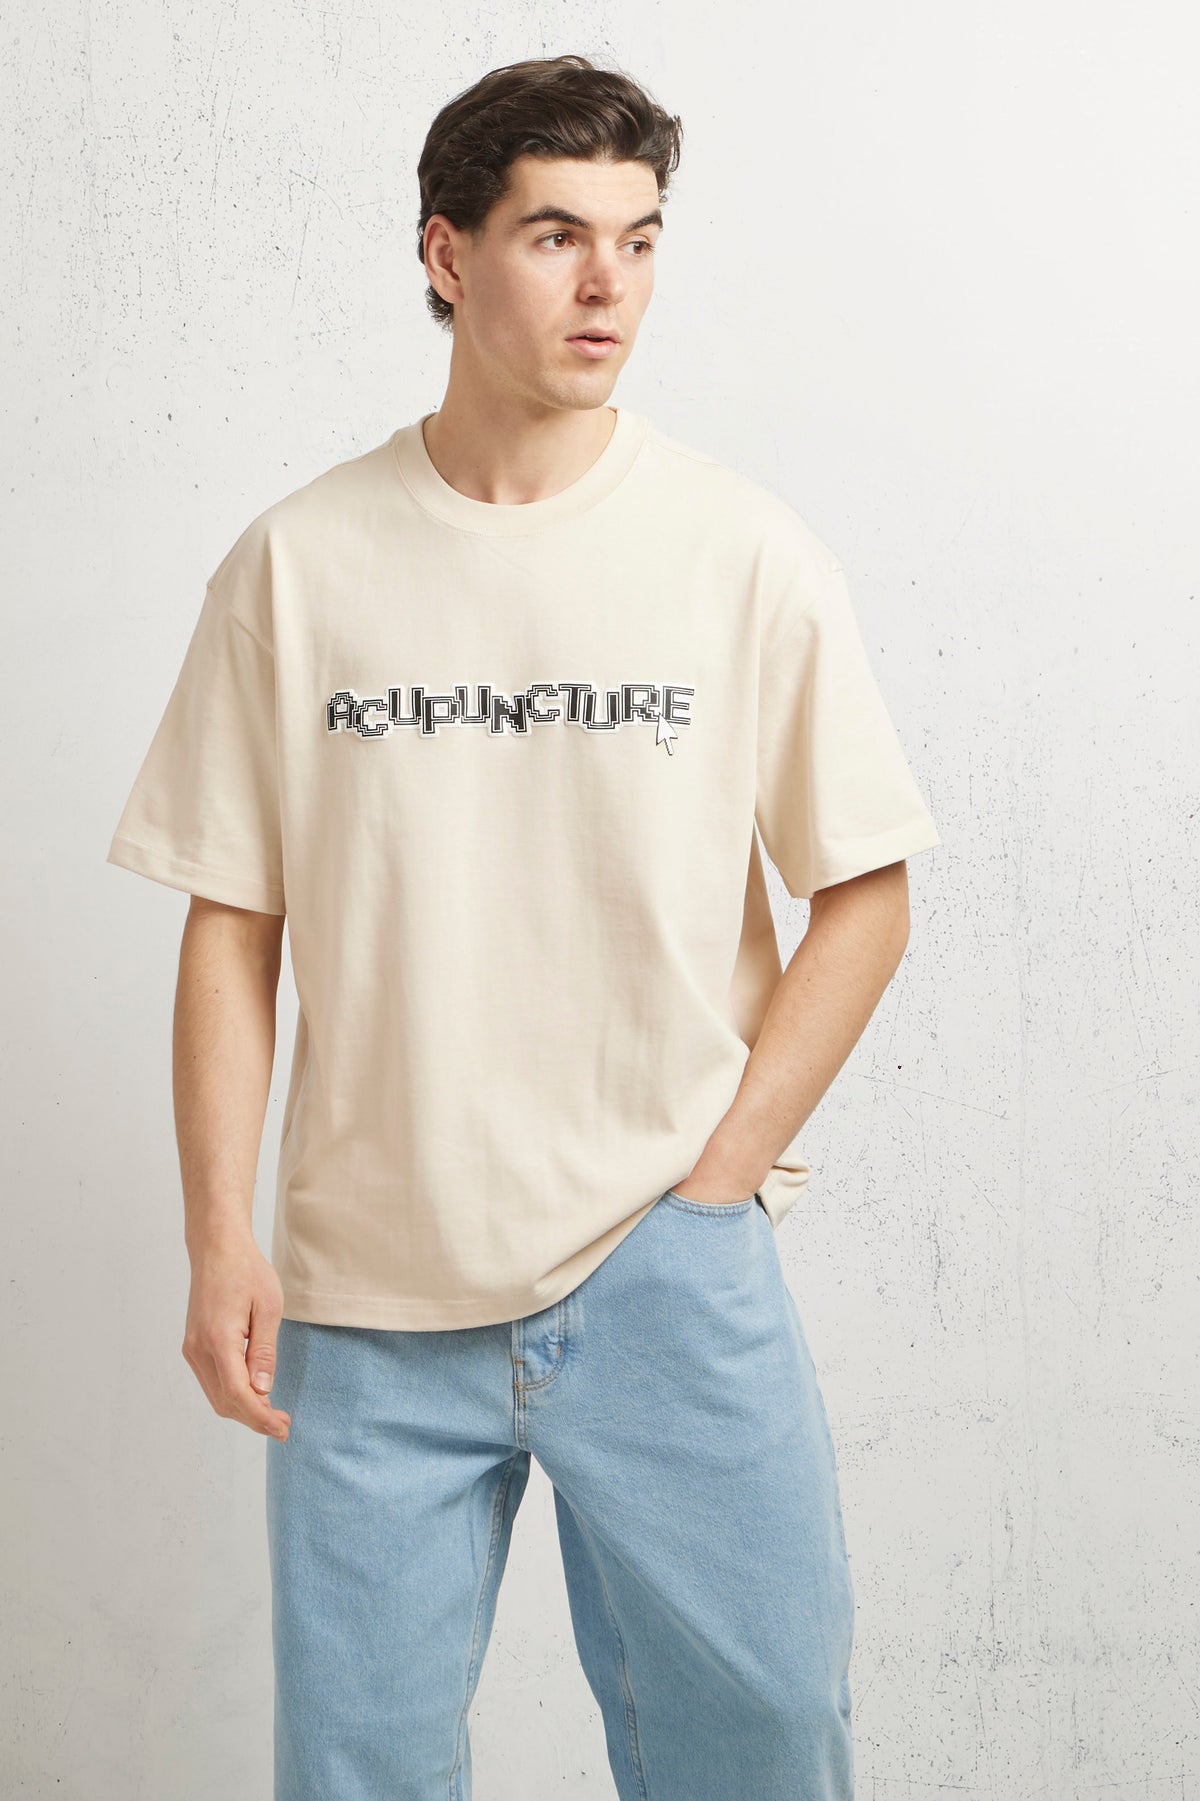 Acupuncture Acu T-shirt Uomo - 3